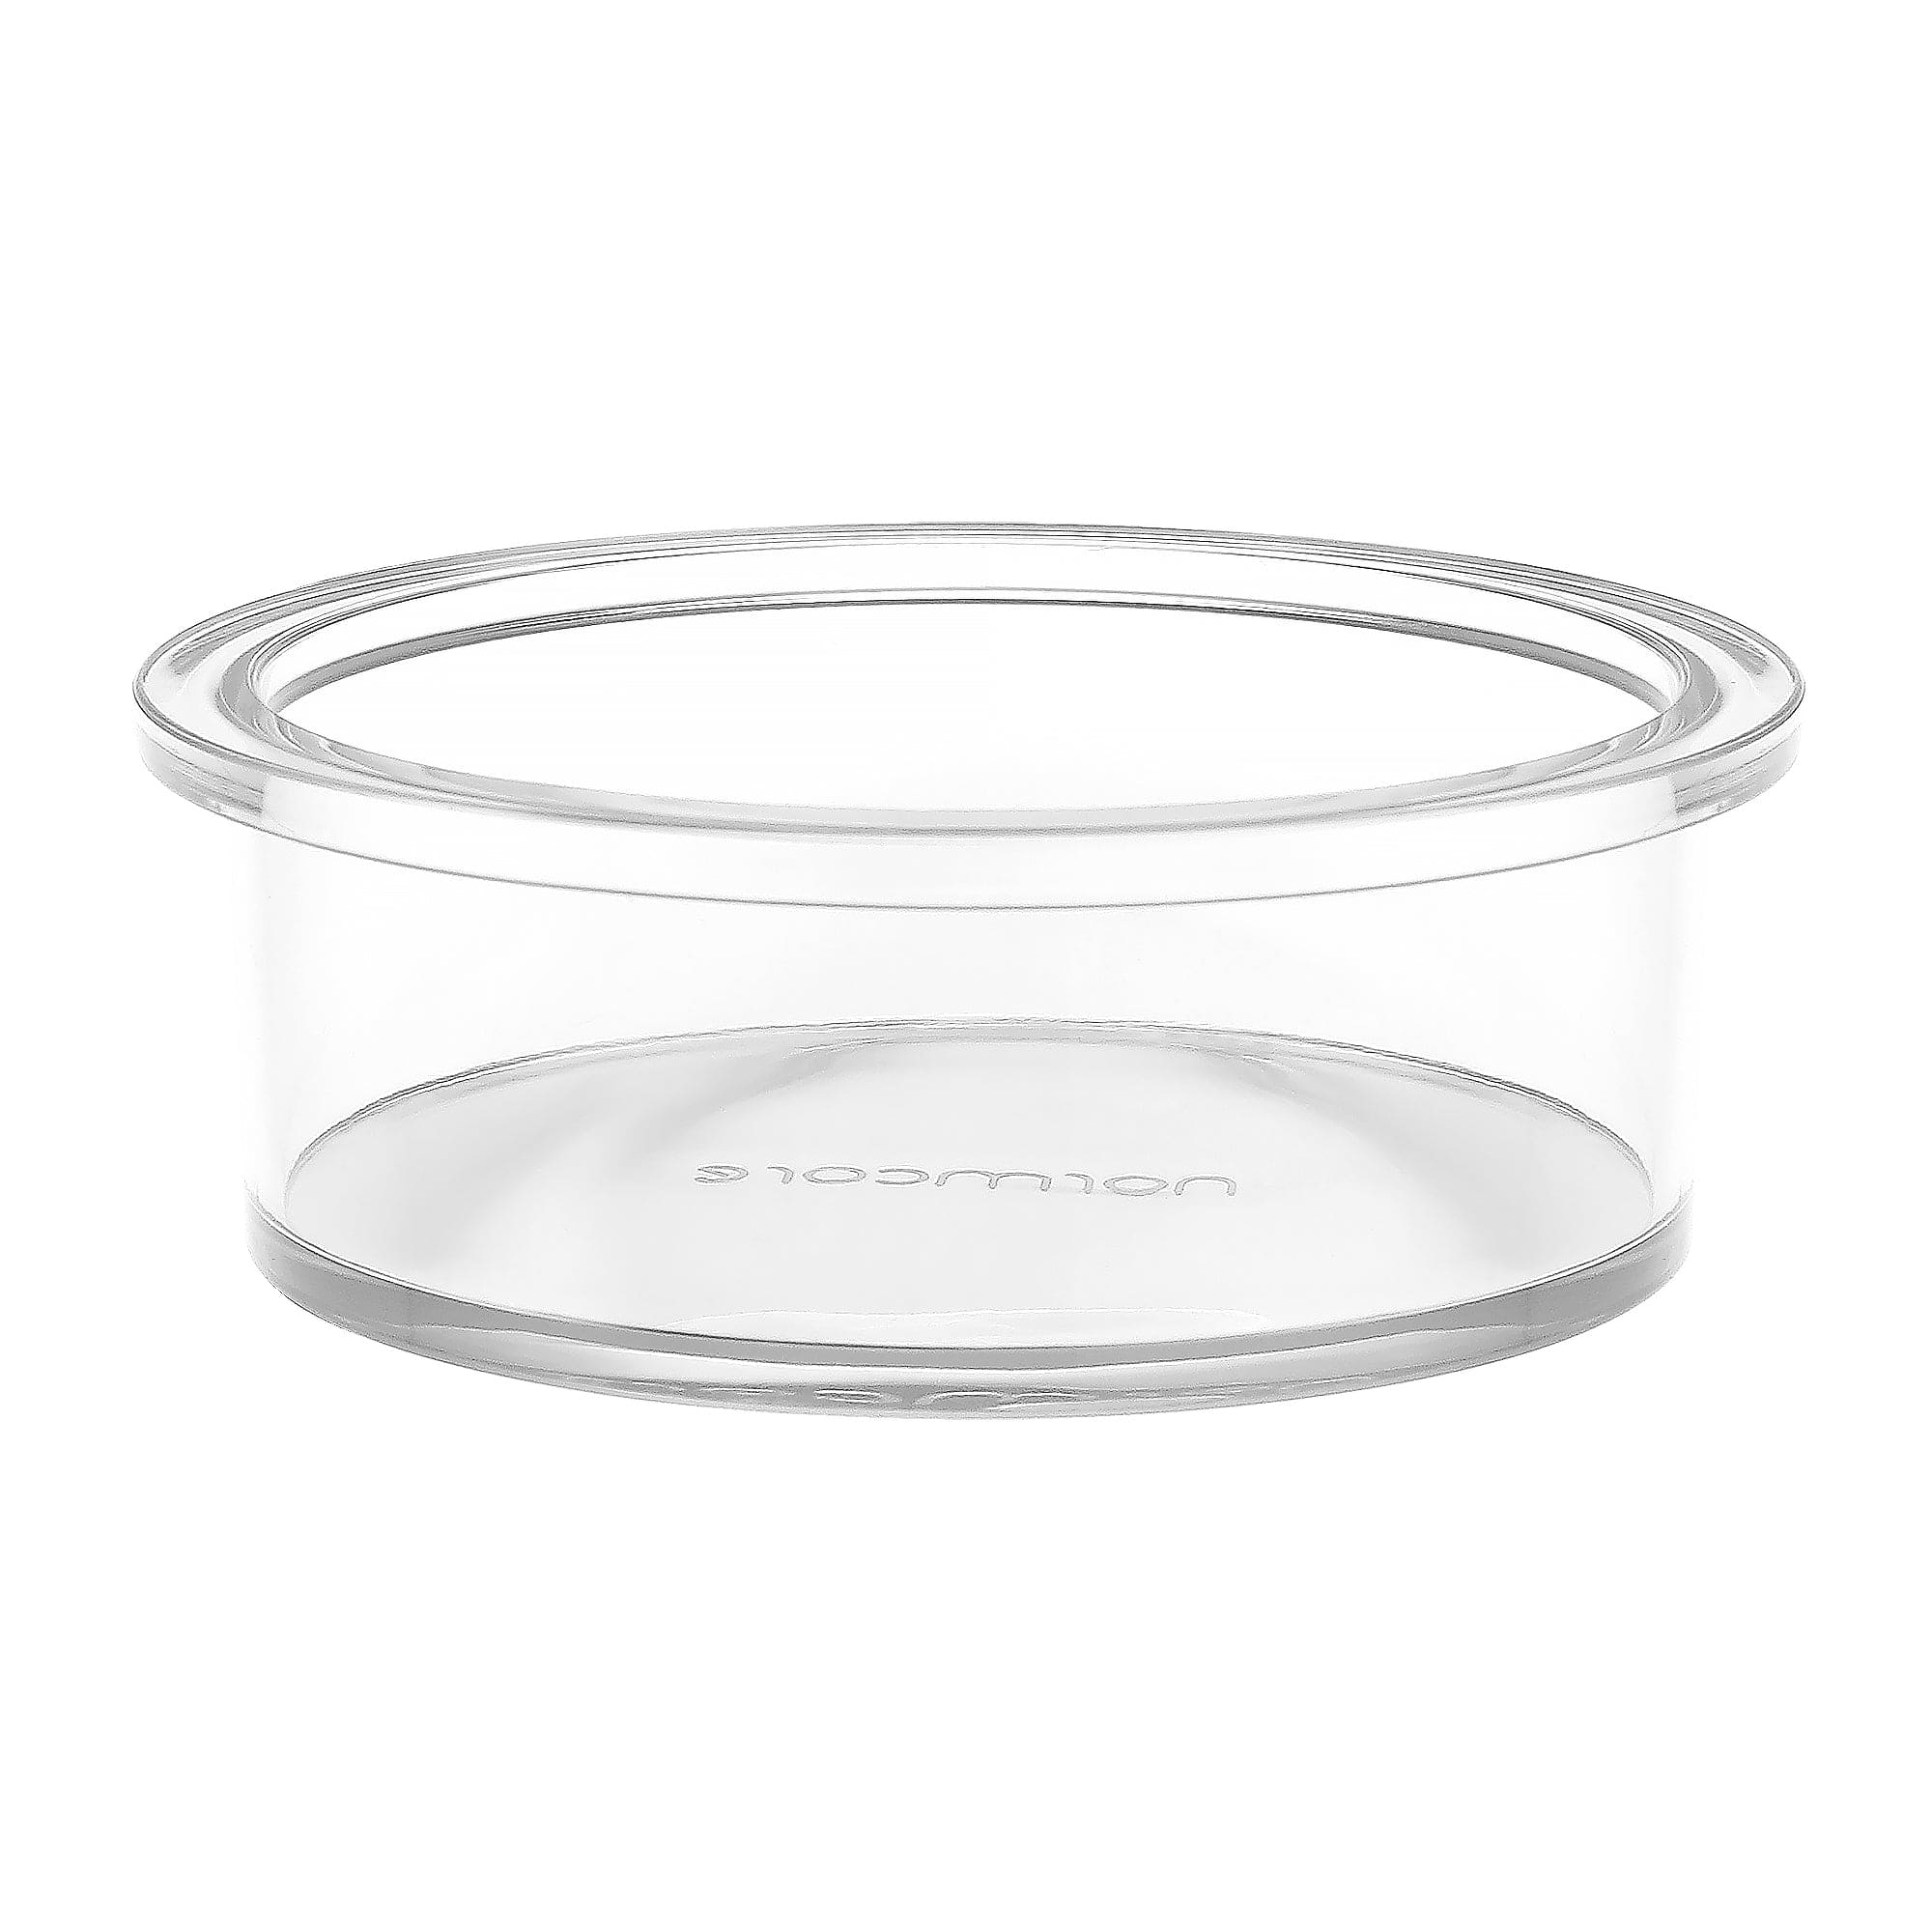 Normcore / Transparent Filter Basket